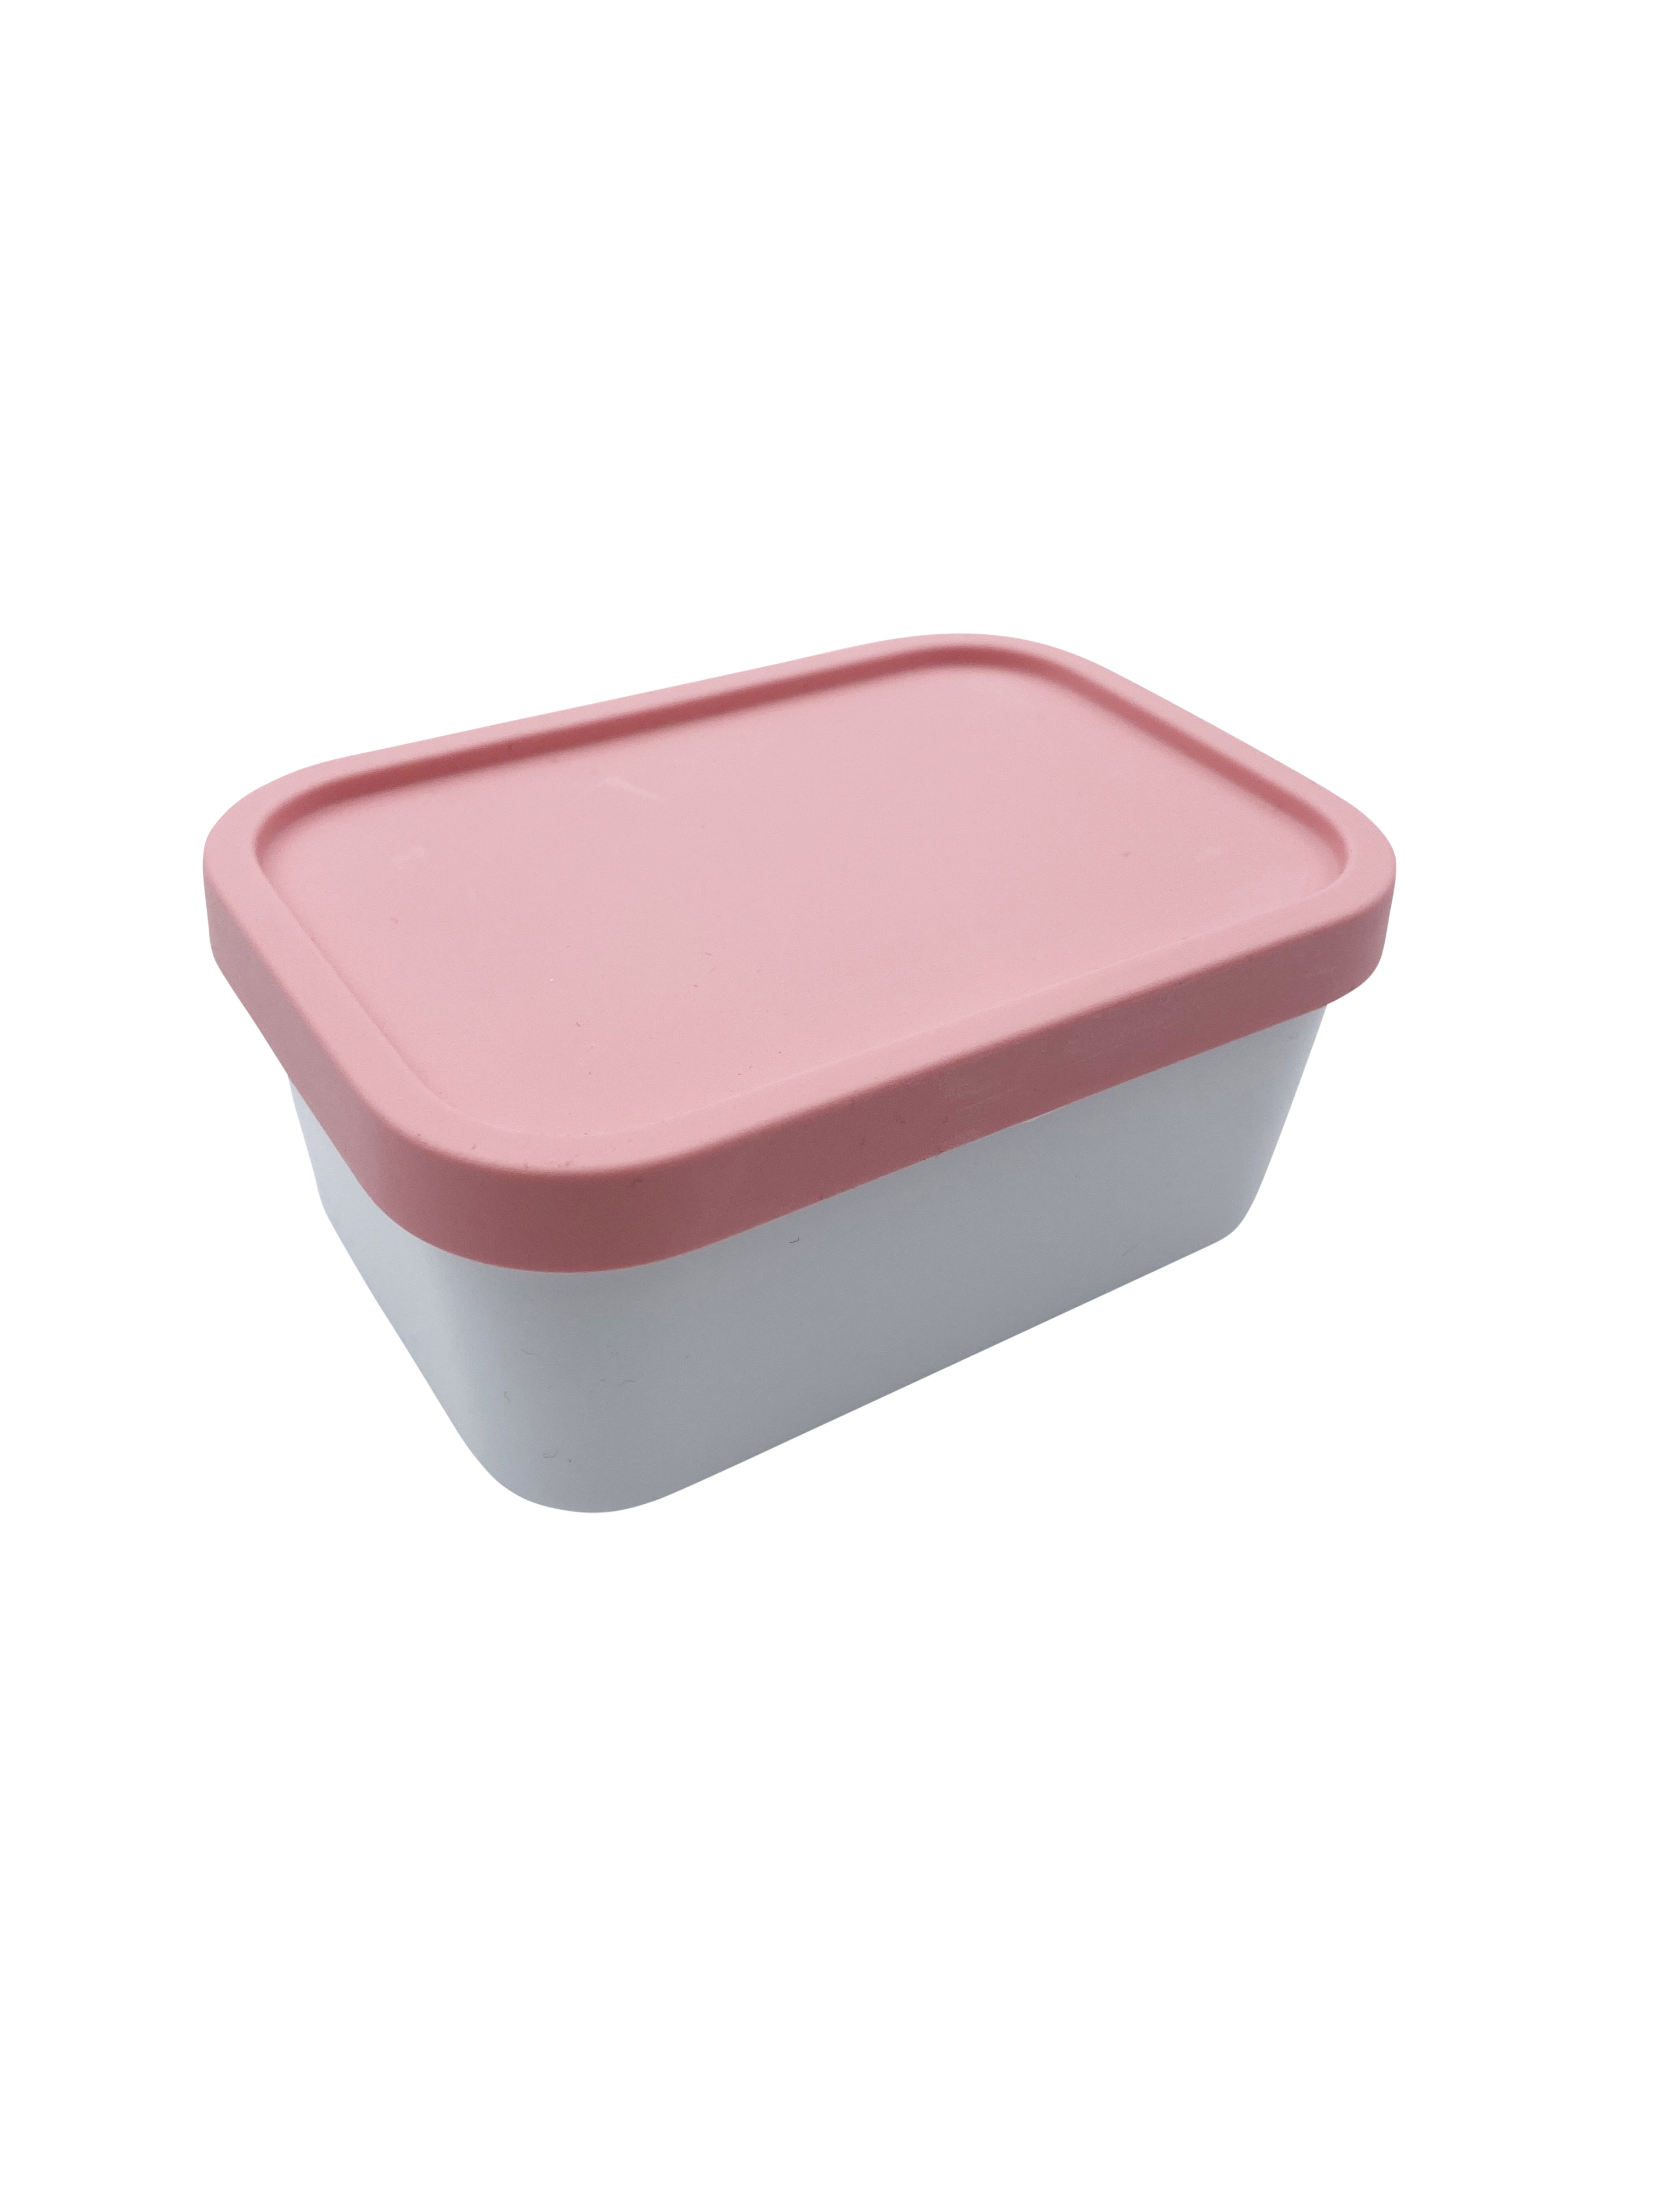 Ersatz-Einsatz für die Bento-Lunchboxen Take a Break, Ersatz Mini-Box 